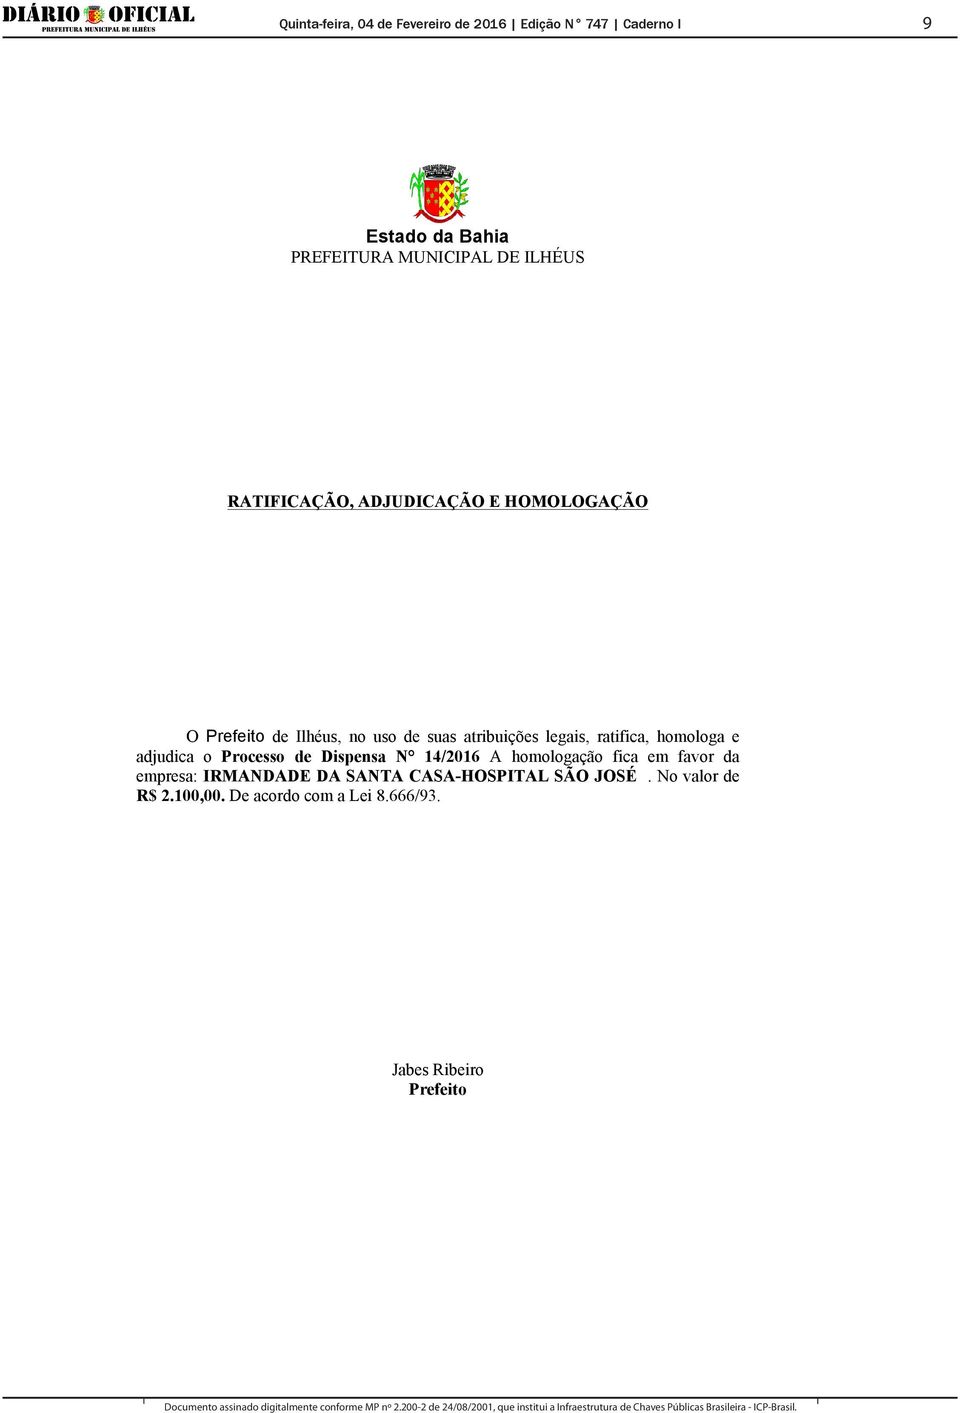 Processo de Dispensa N 14/2016 A homologação fica em favor da empresa: IRMANDADE DA SANTA